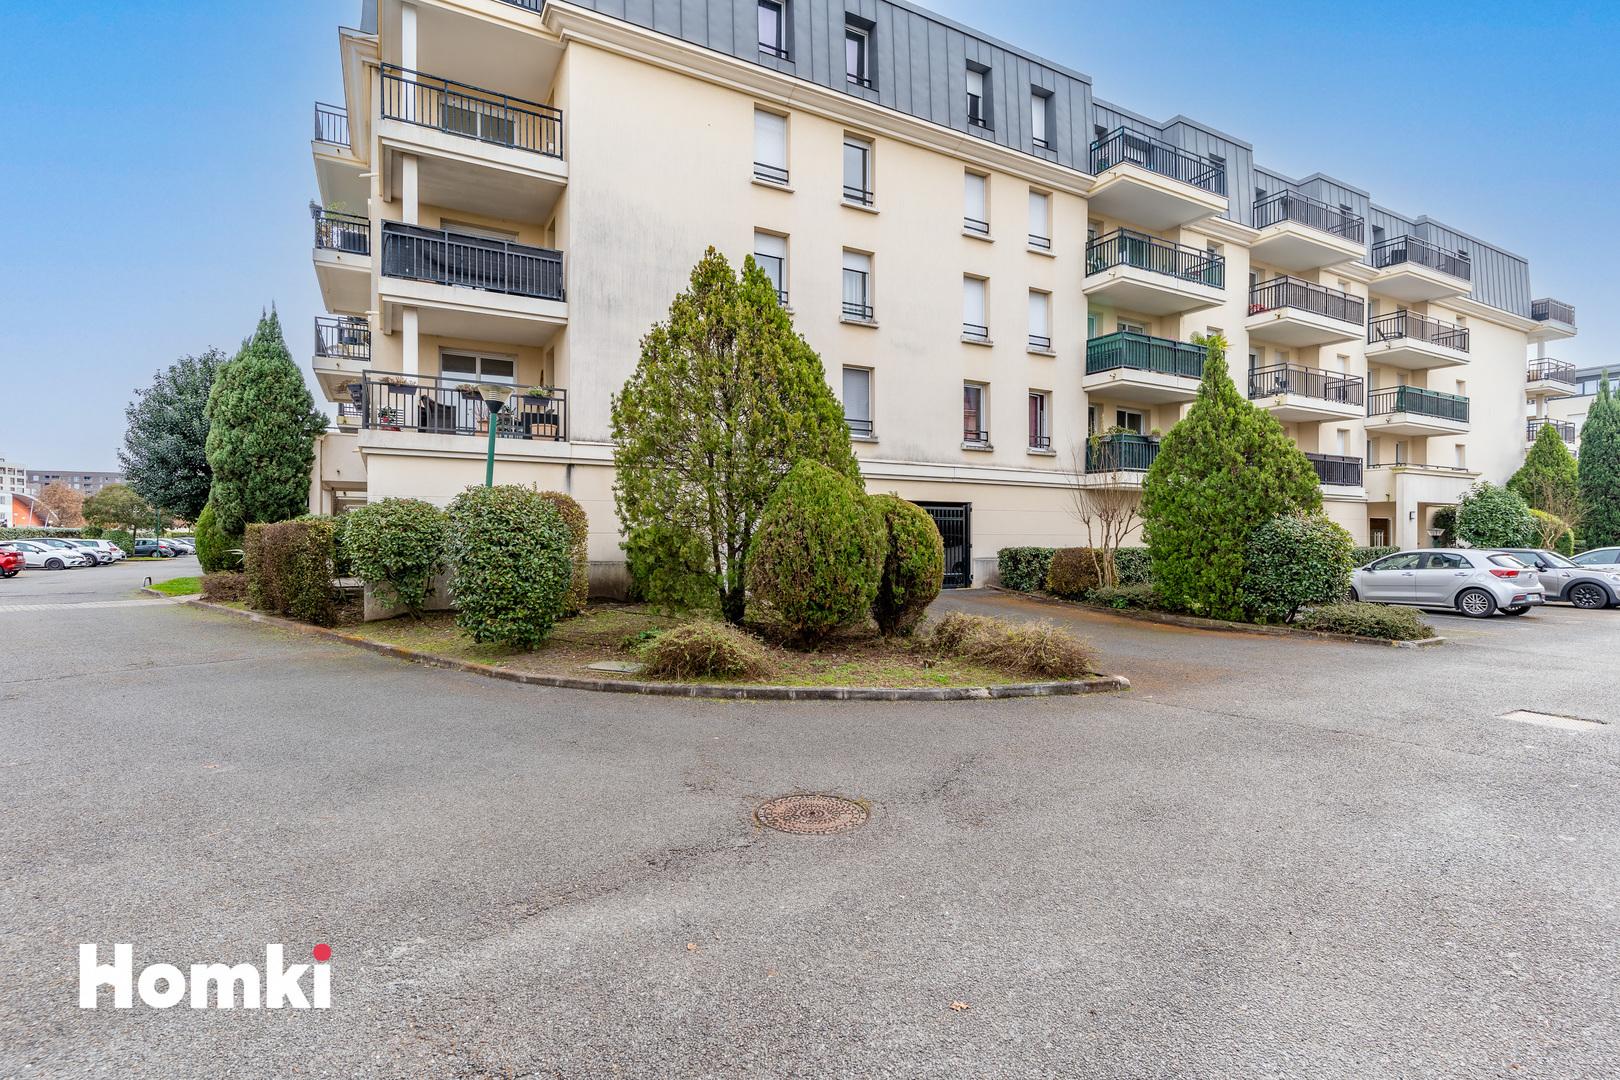 Homki - Vente Appartement  de 46.0 m² à Bordeaux 33300